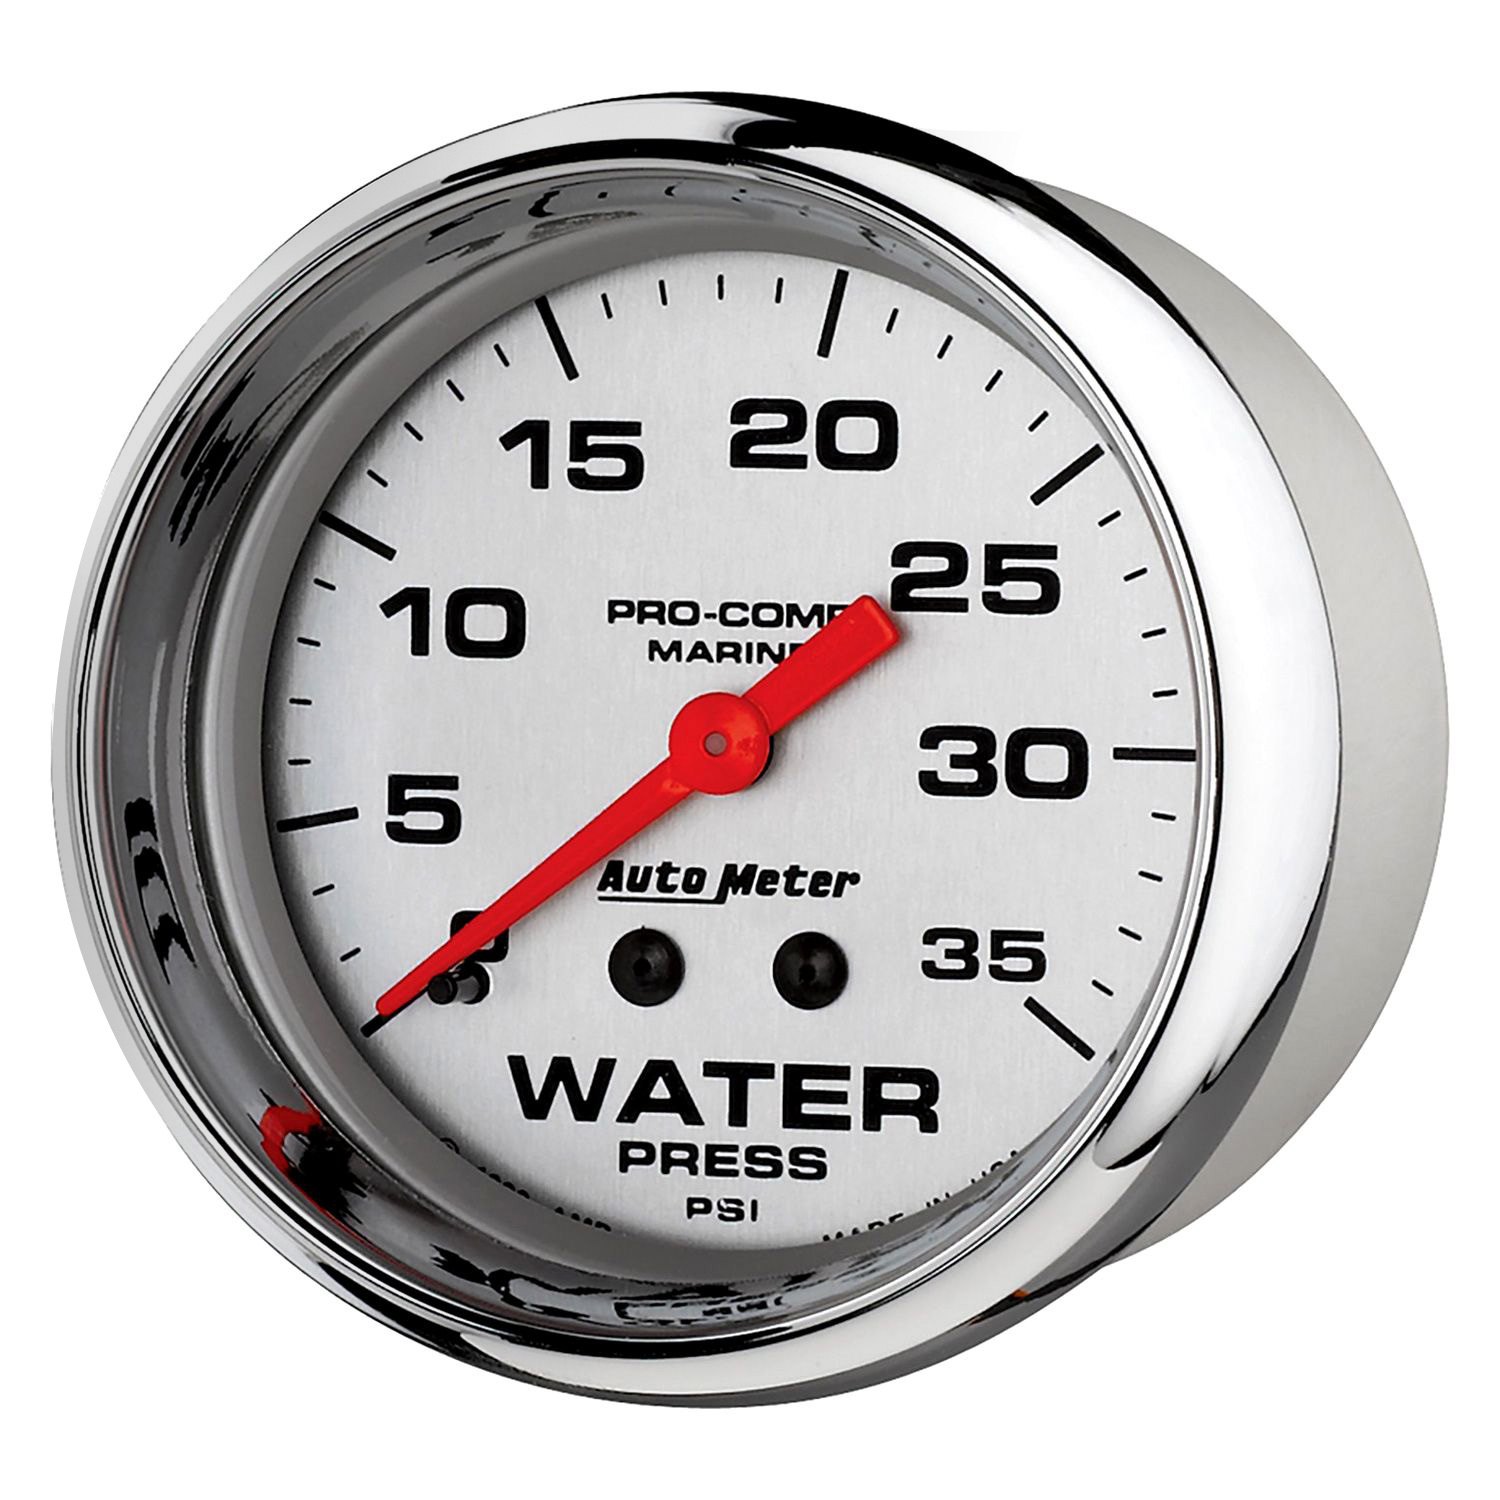 35 psi. Mechanical Water Meter. How unfused Oil on a Pressure Gauge.